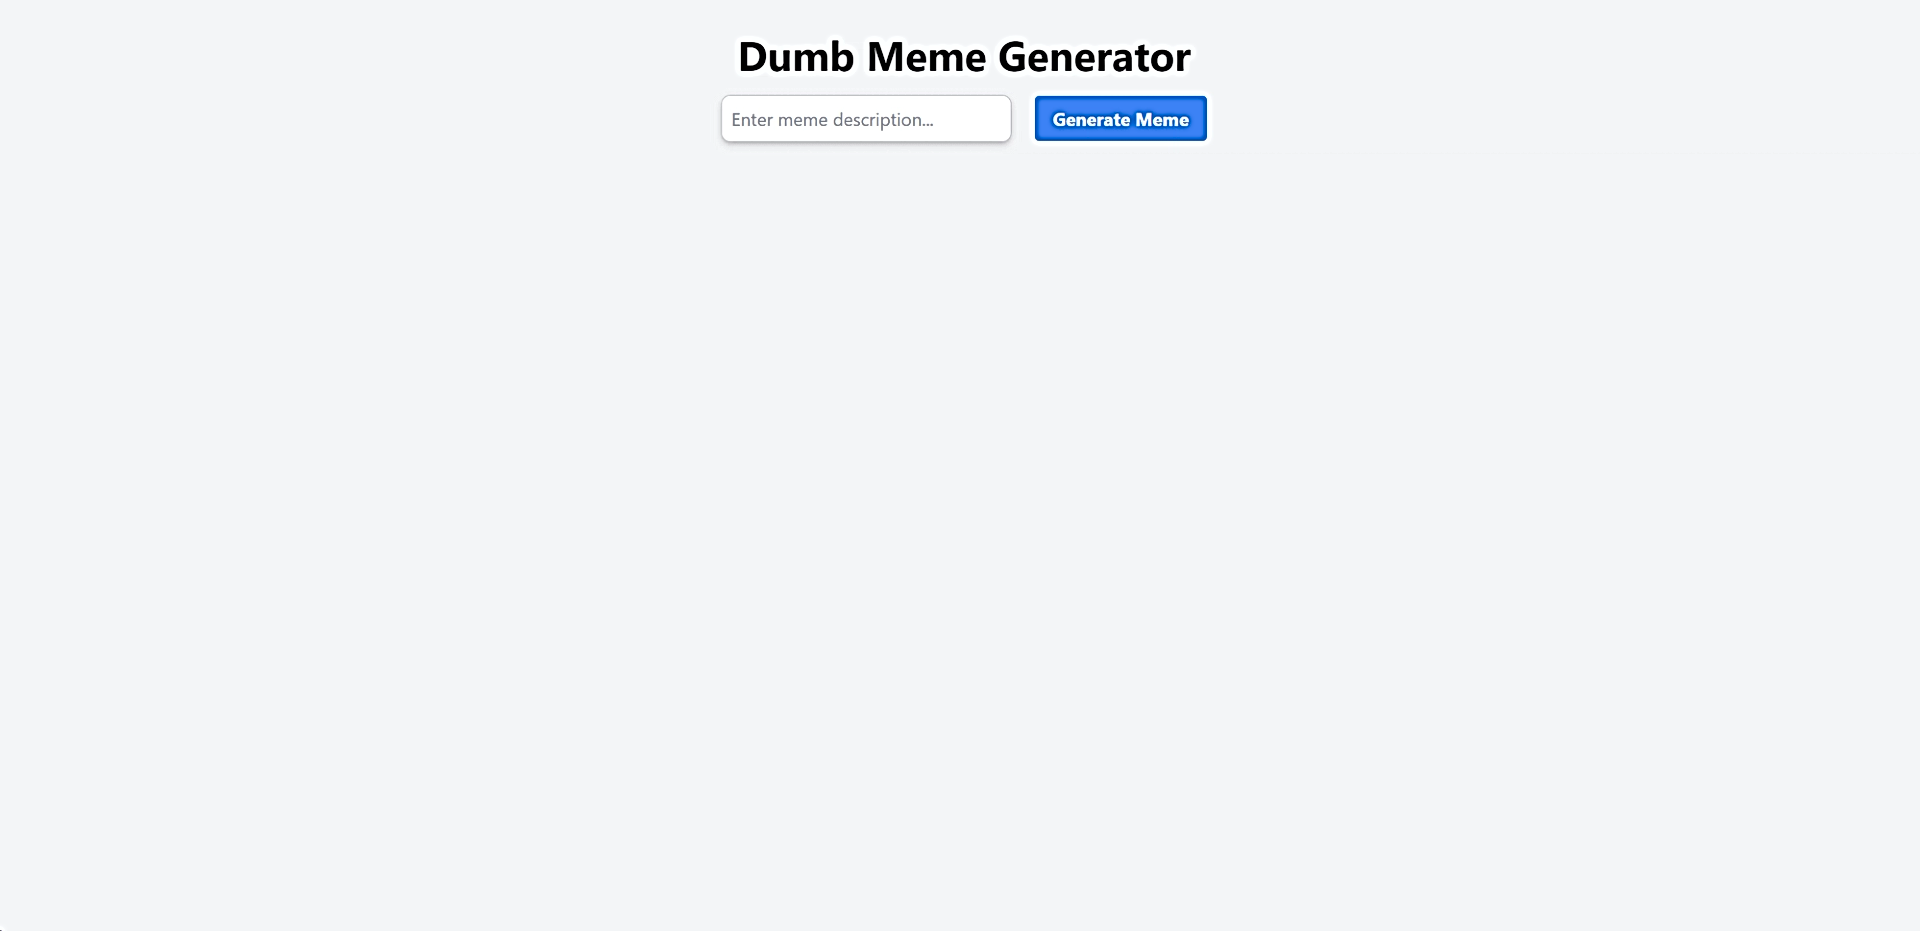 Dumb Meme Generator featured